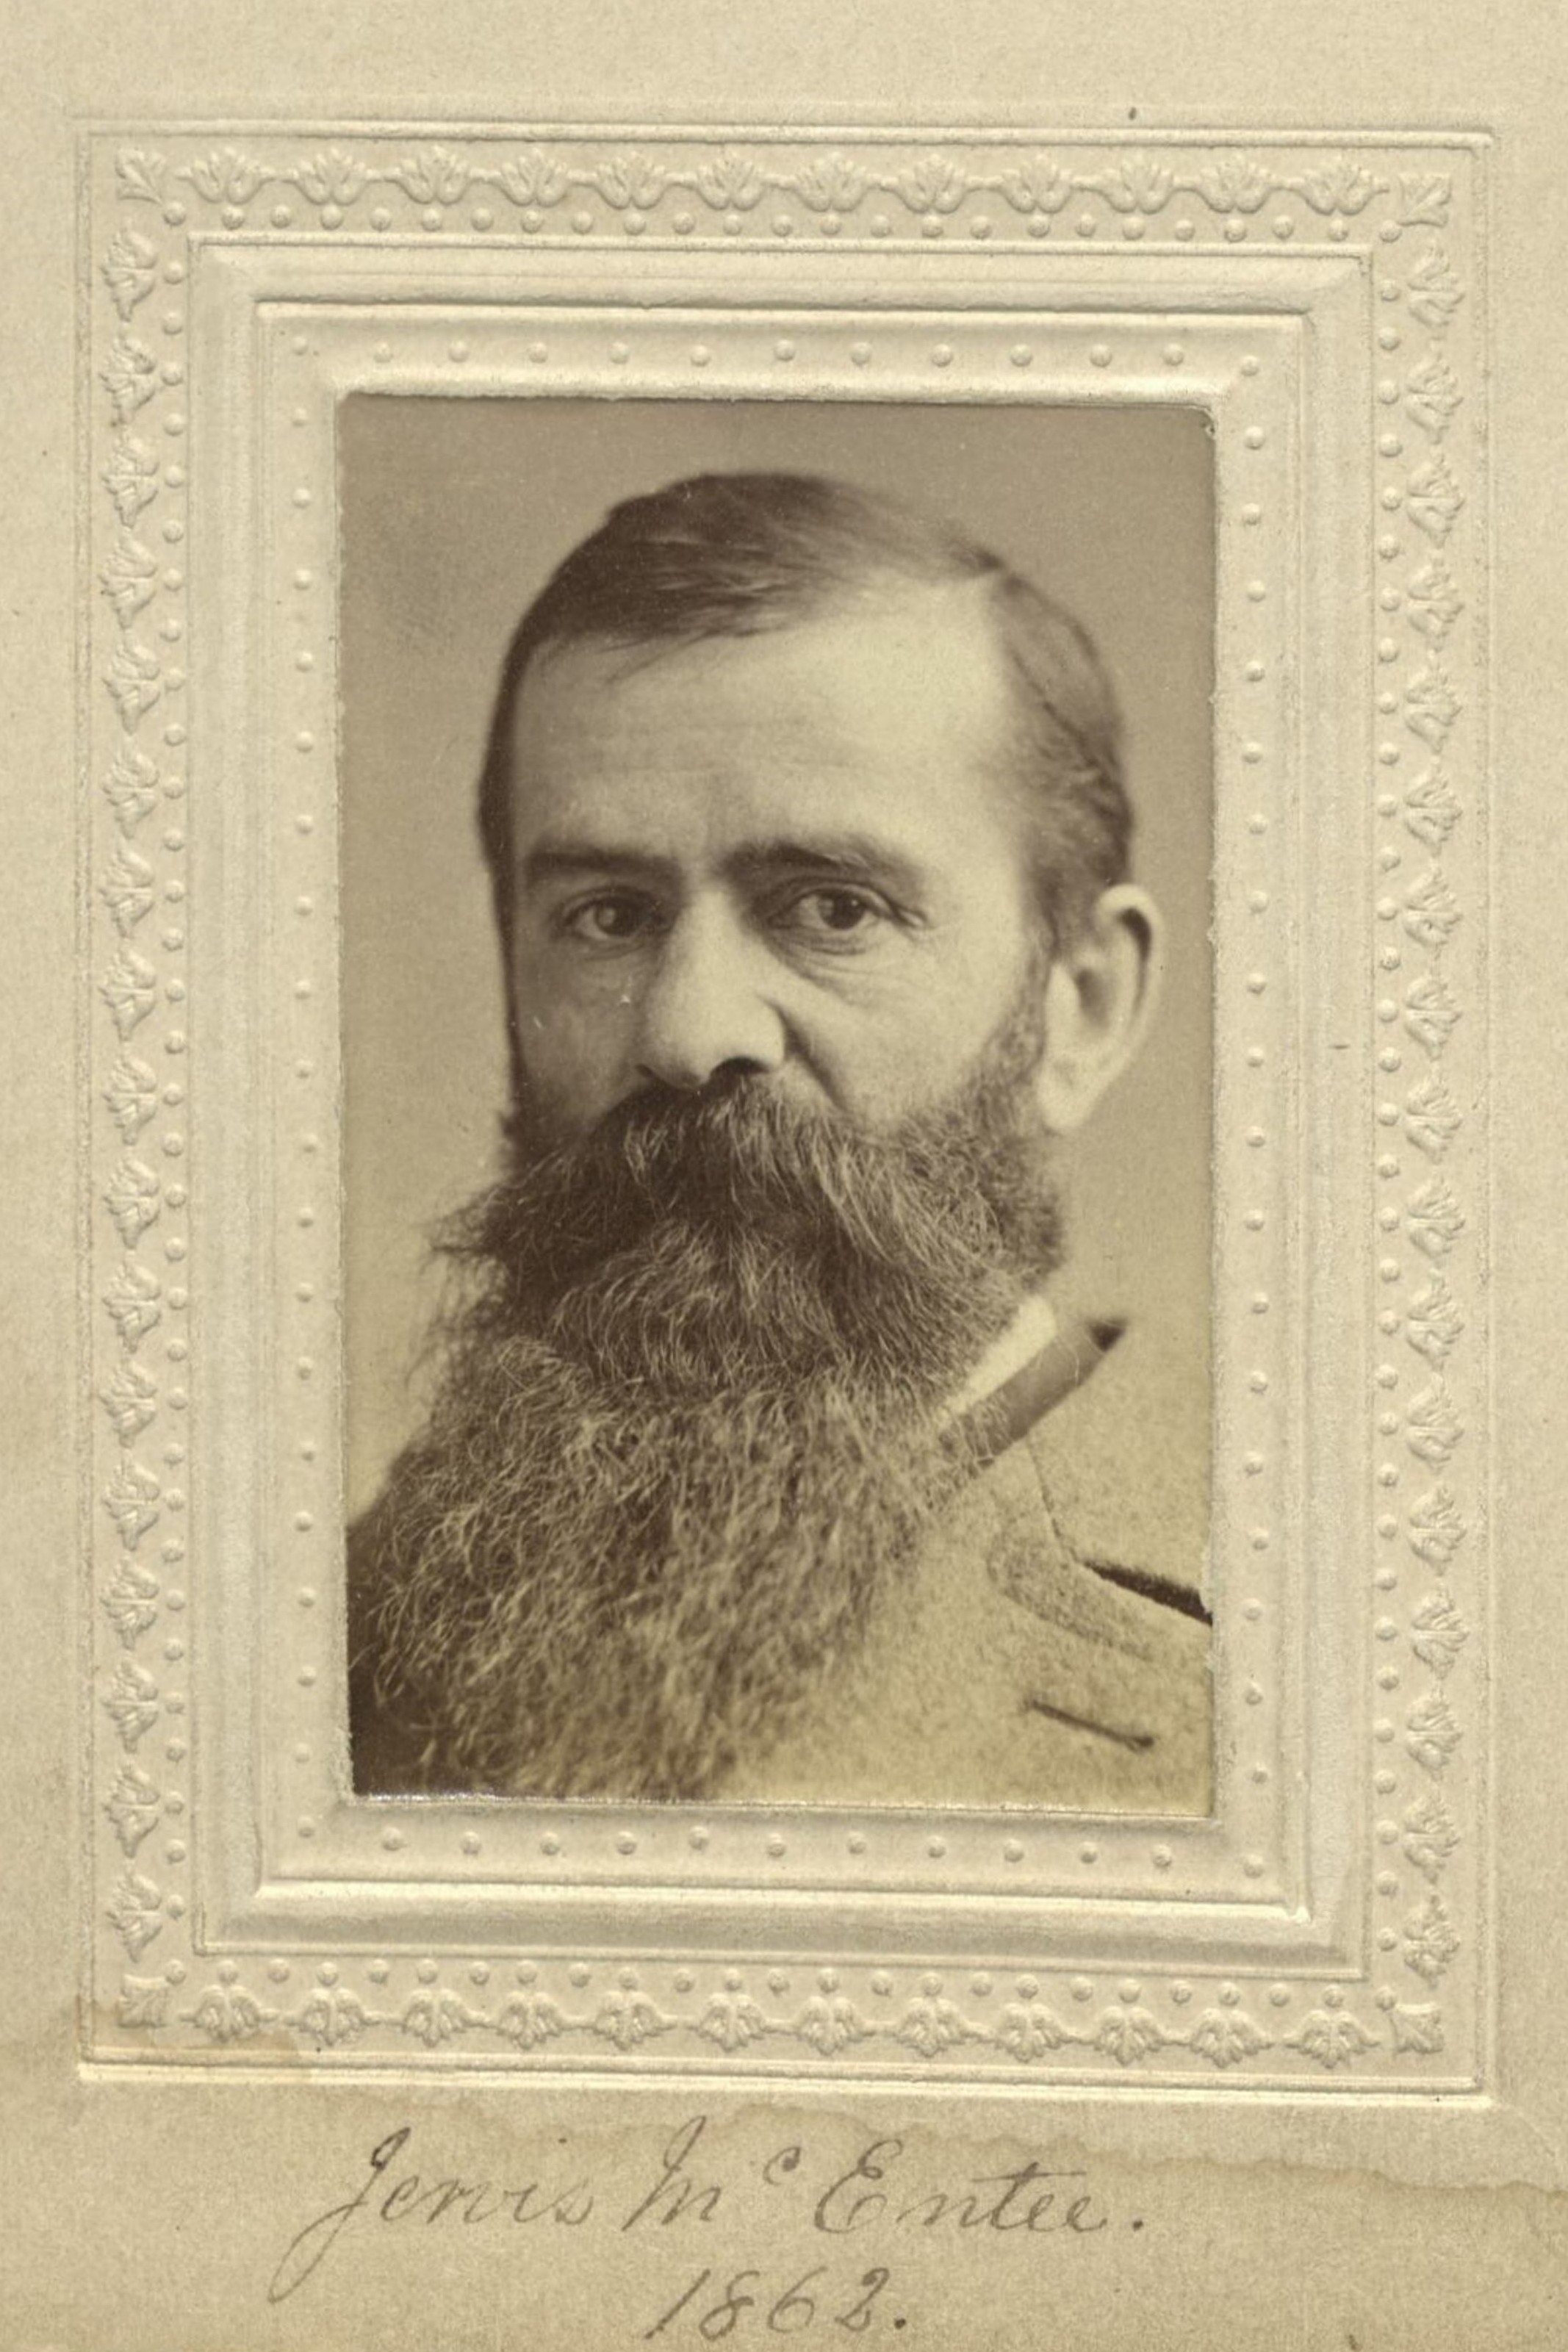 Member portrait of Jervis McEntee